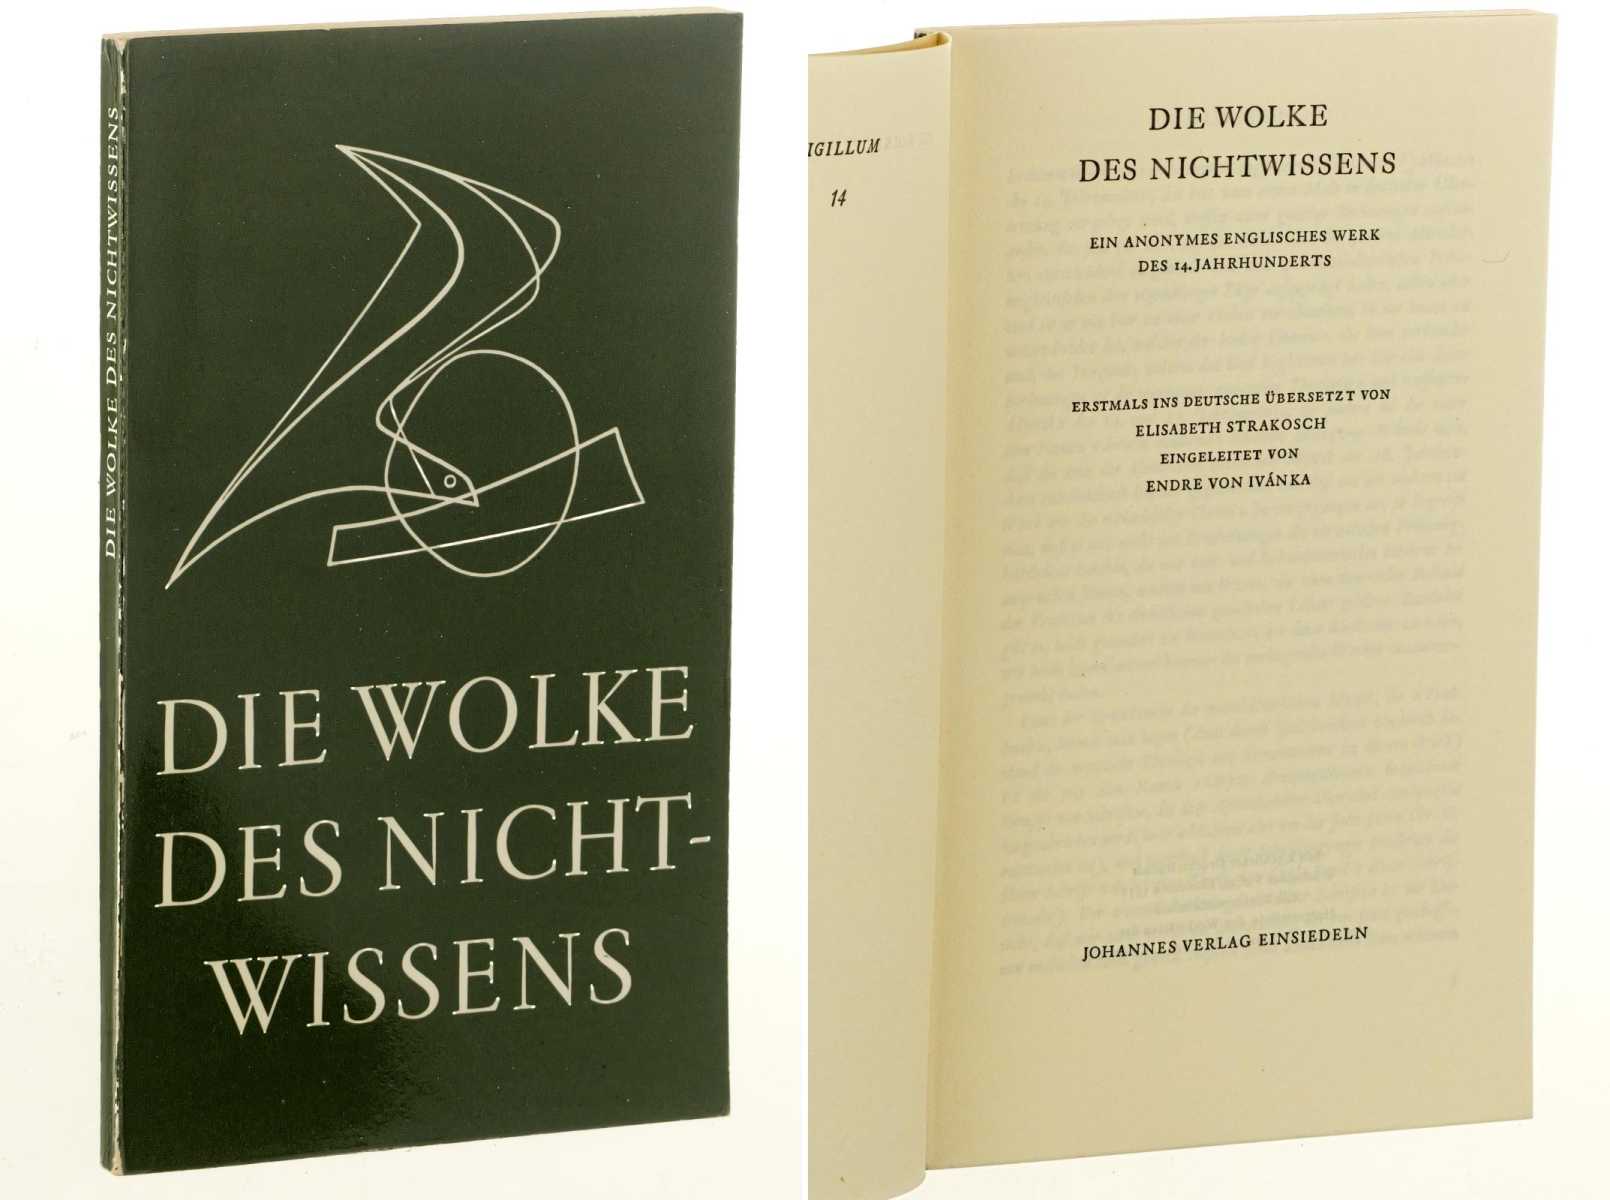   Die Wolke des Nichtwissens. Ein anonymes englisches Werk des 14. Jahrhunderts. Erstmals ins Deutsche übersetzt von Elisabeth Strakosch, eingeleitet von Endre von Ivánka. 